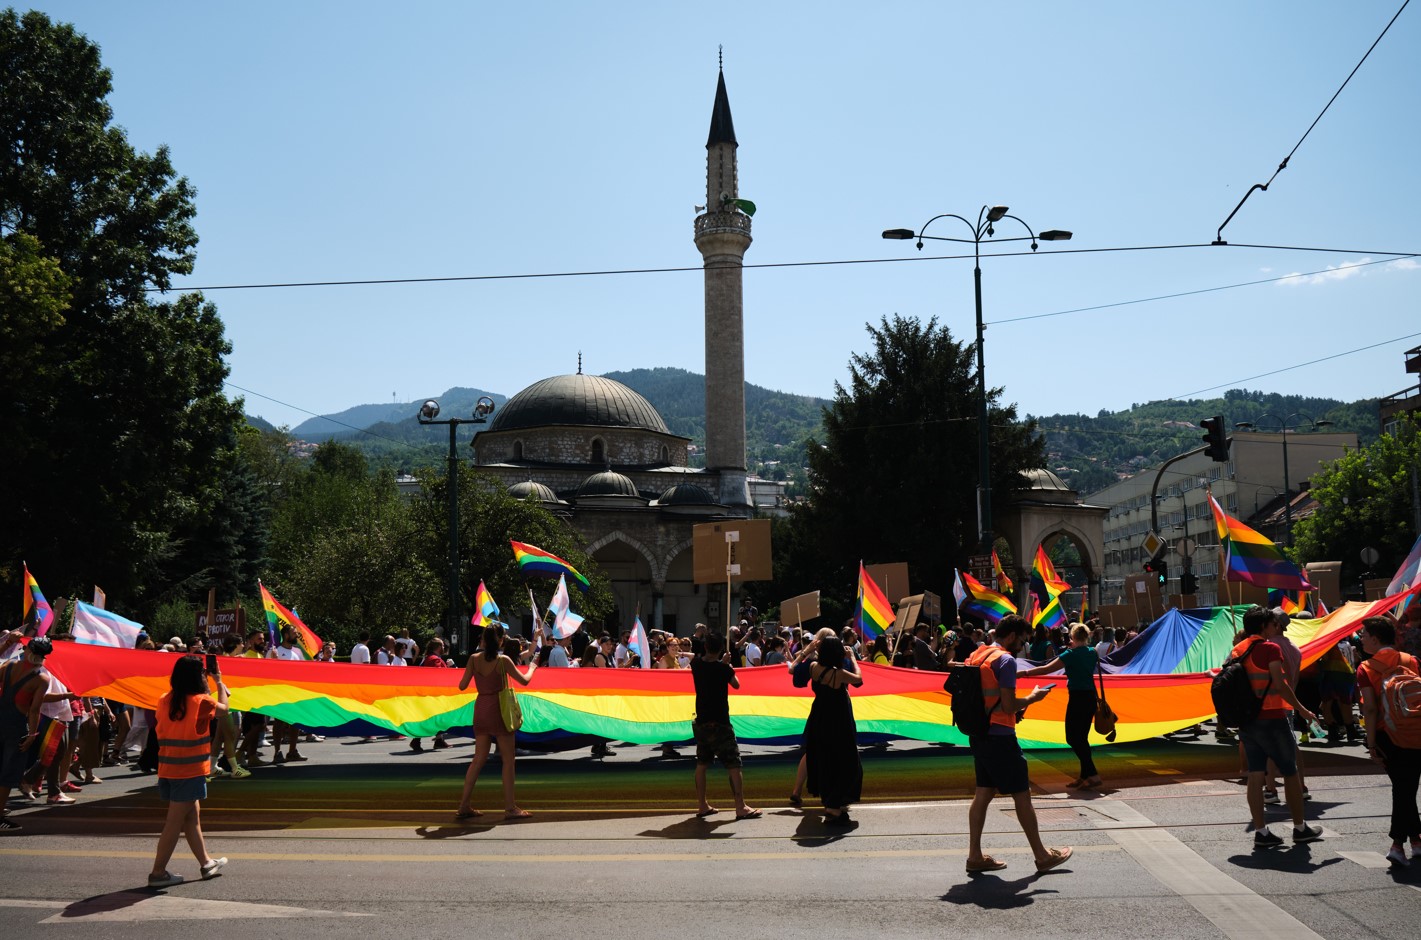 Europäisches Parlament nach Albanien und Bosnien und Herzegowina: Übernehmen Sie die LGBTQ-Ideologie, wenn Sie eine EU-Mitgliedschaft anstreben